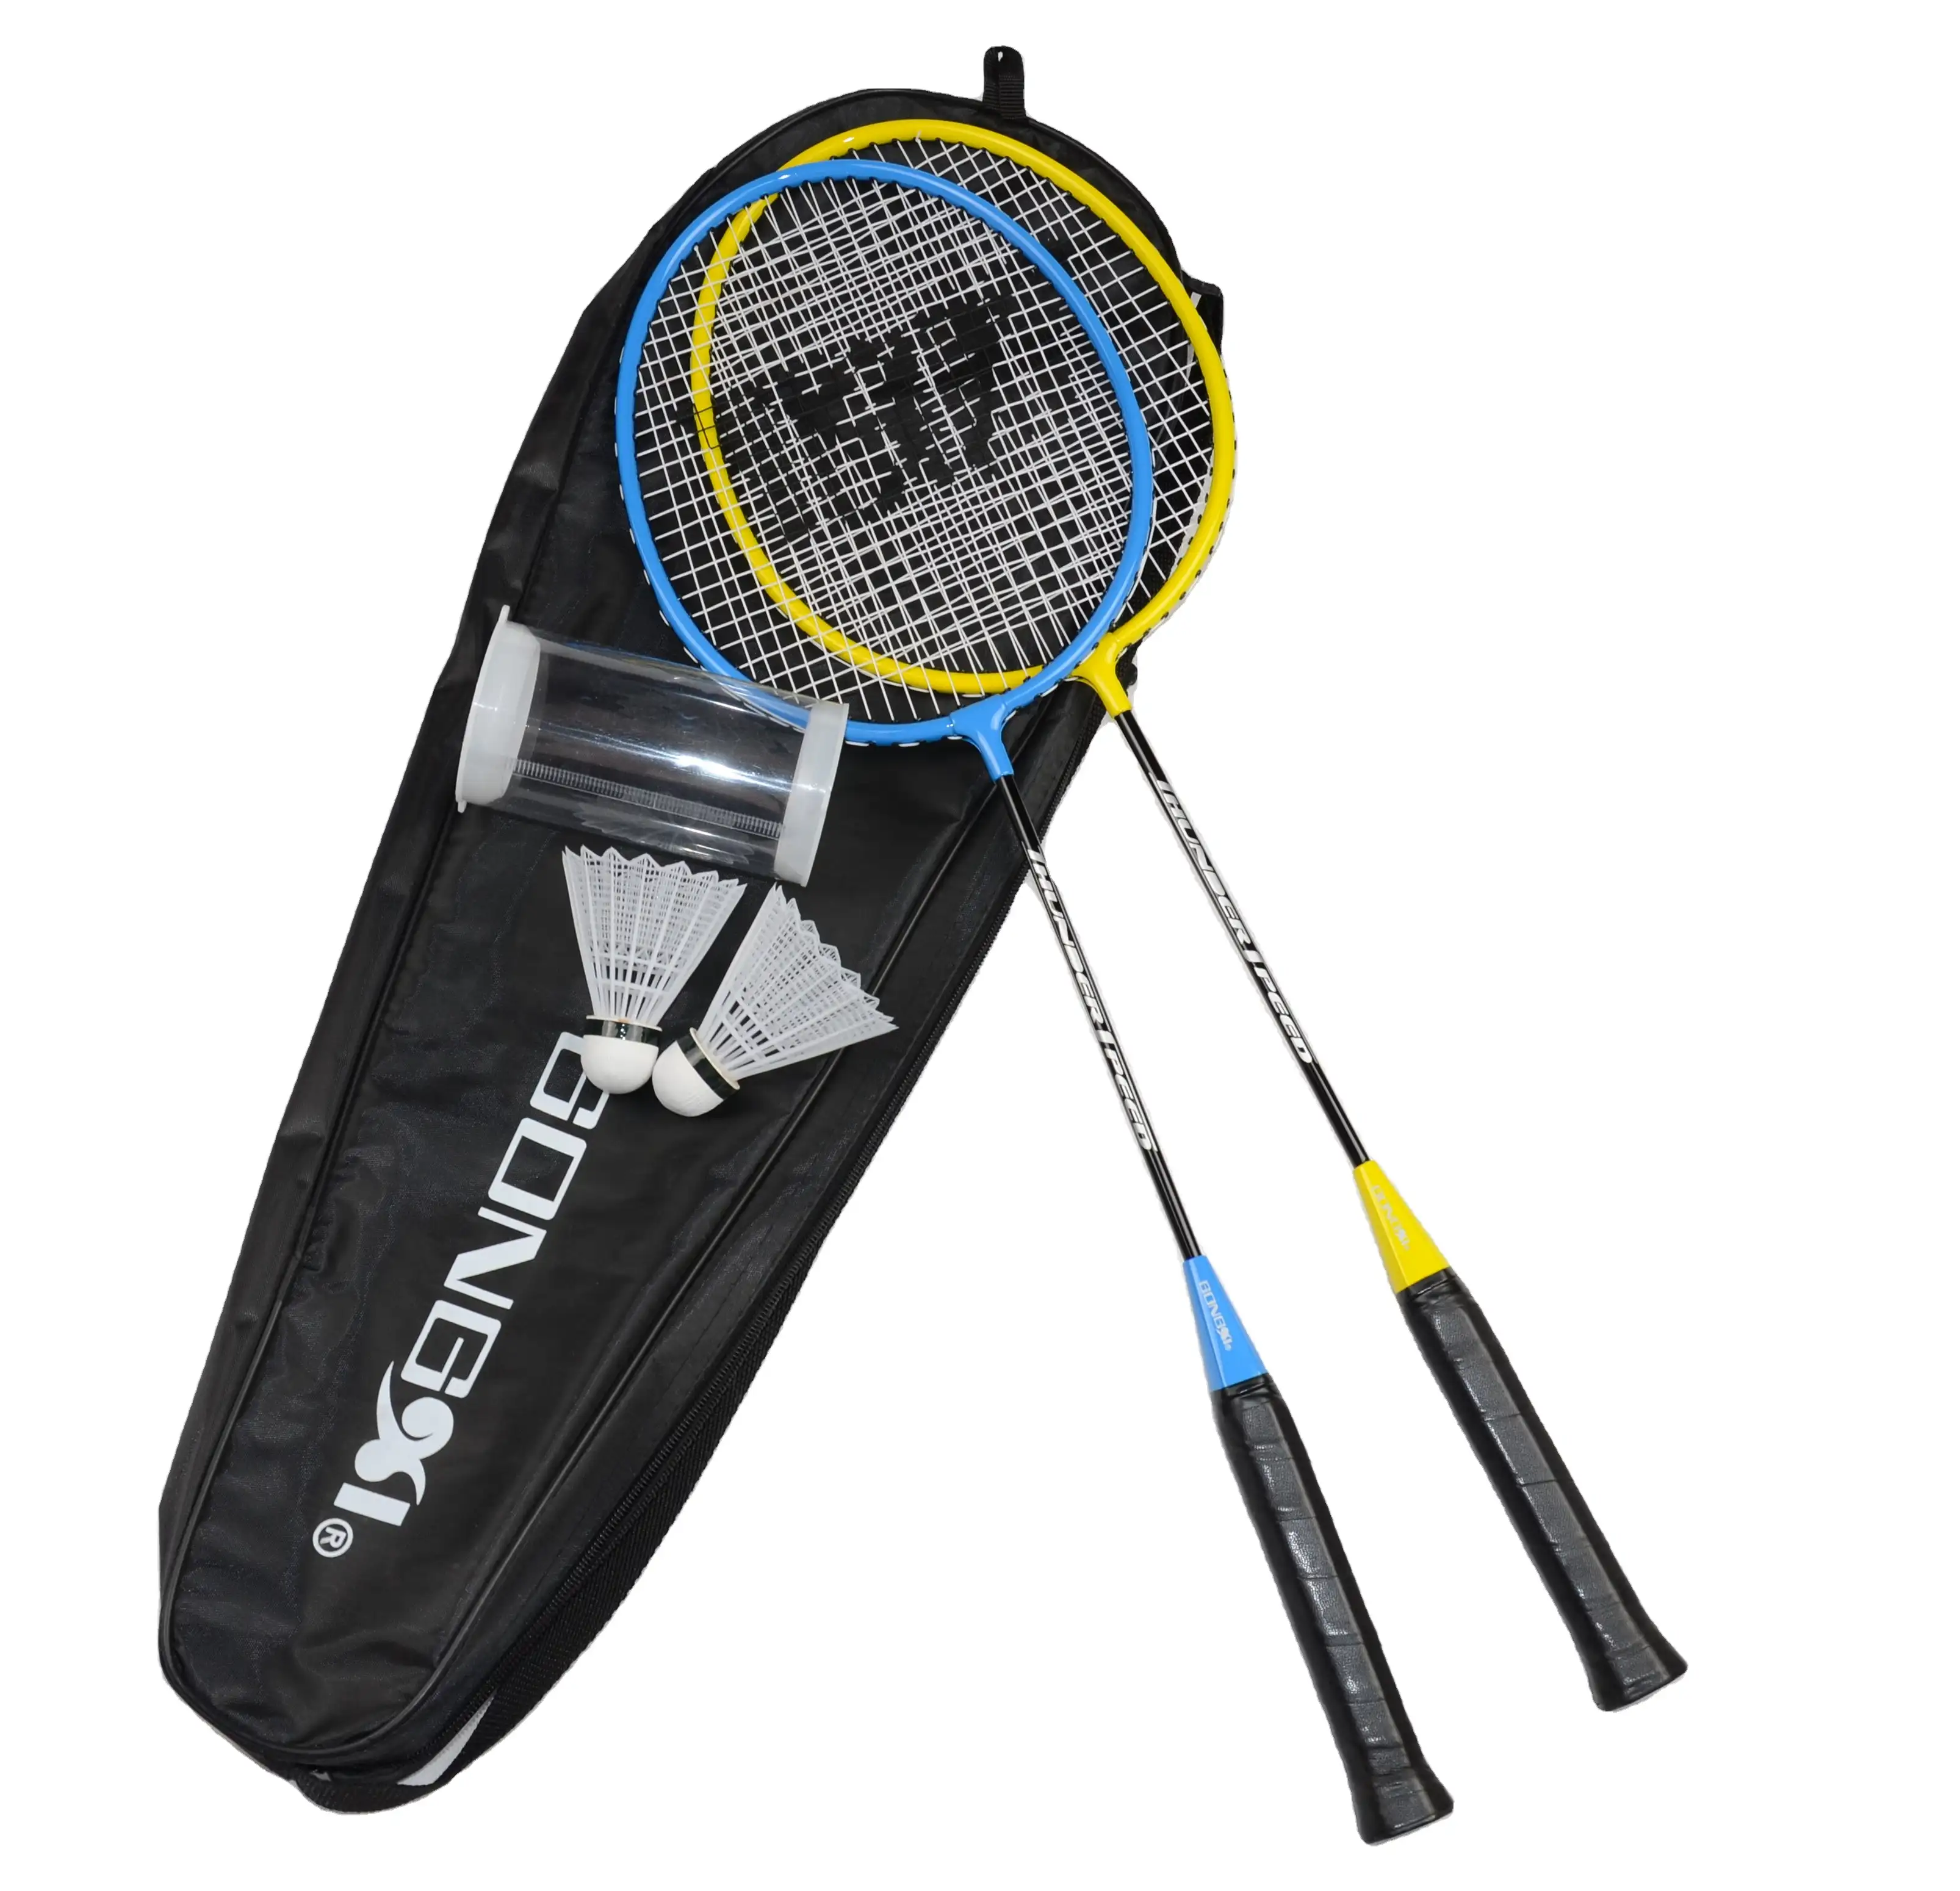 Aanvaller 501 Groen Beste Kwaliteit Badminton Racket/Badminton Racket Groothandel